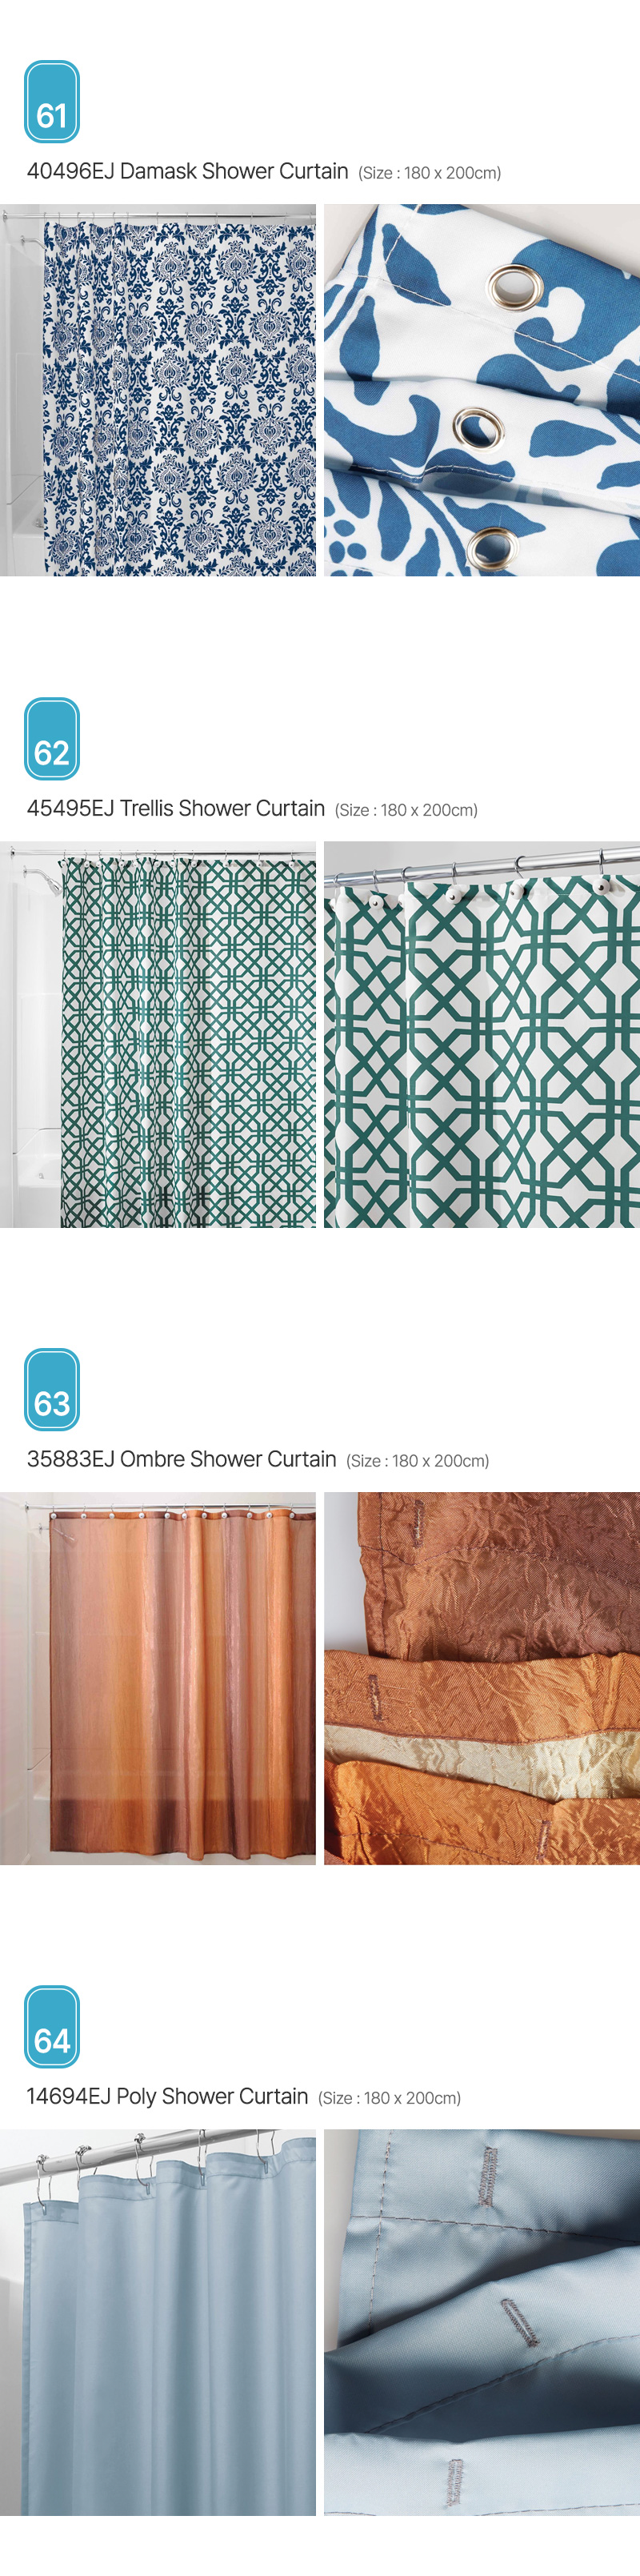 Aria_Shower-Curtain_16.jpg